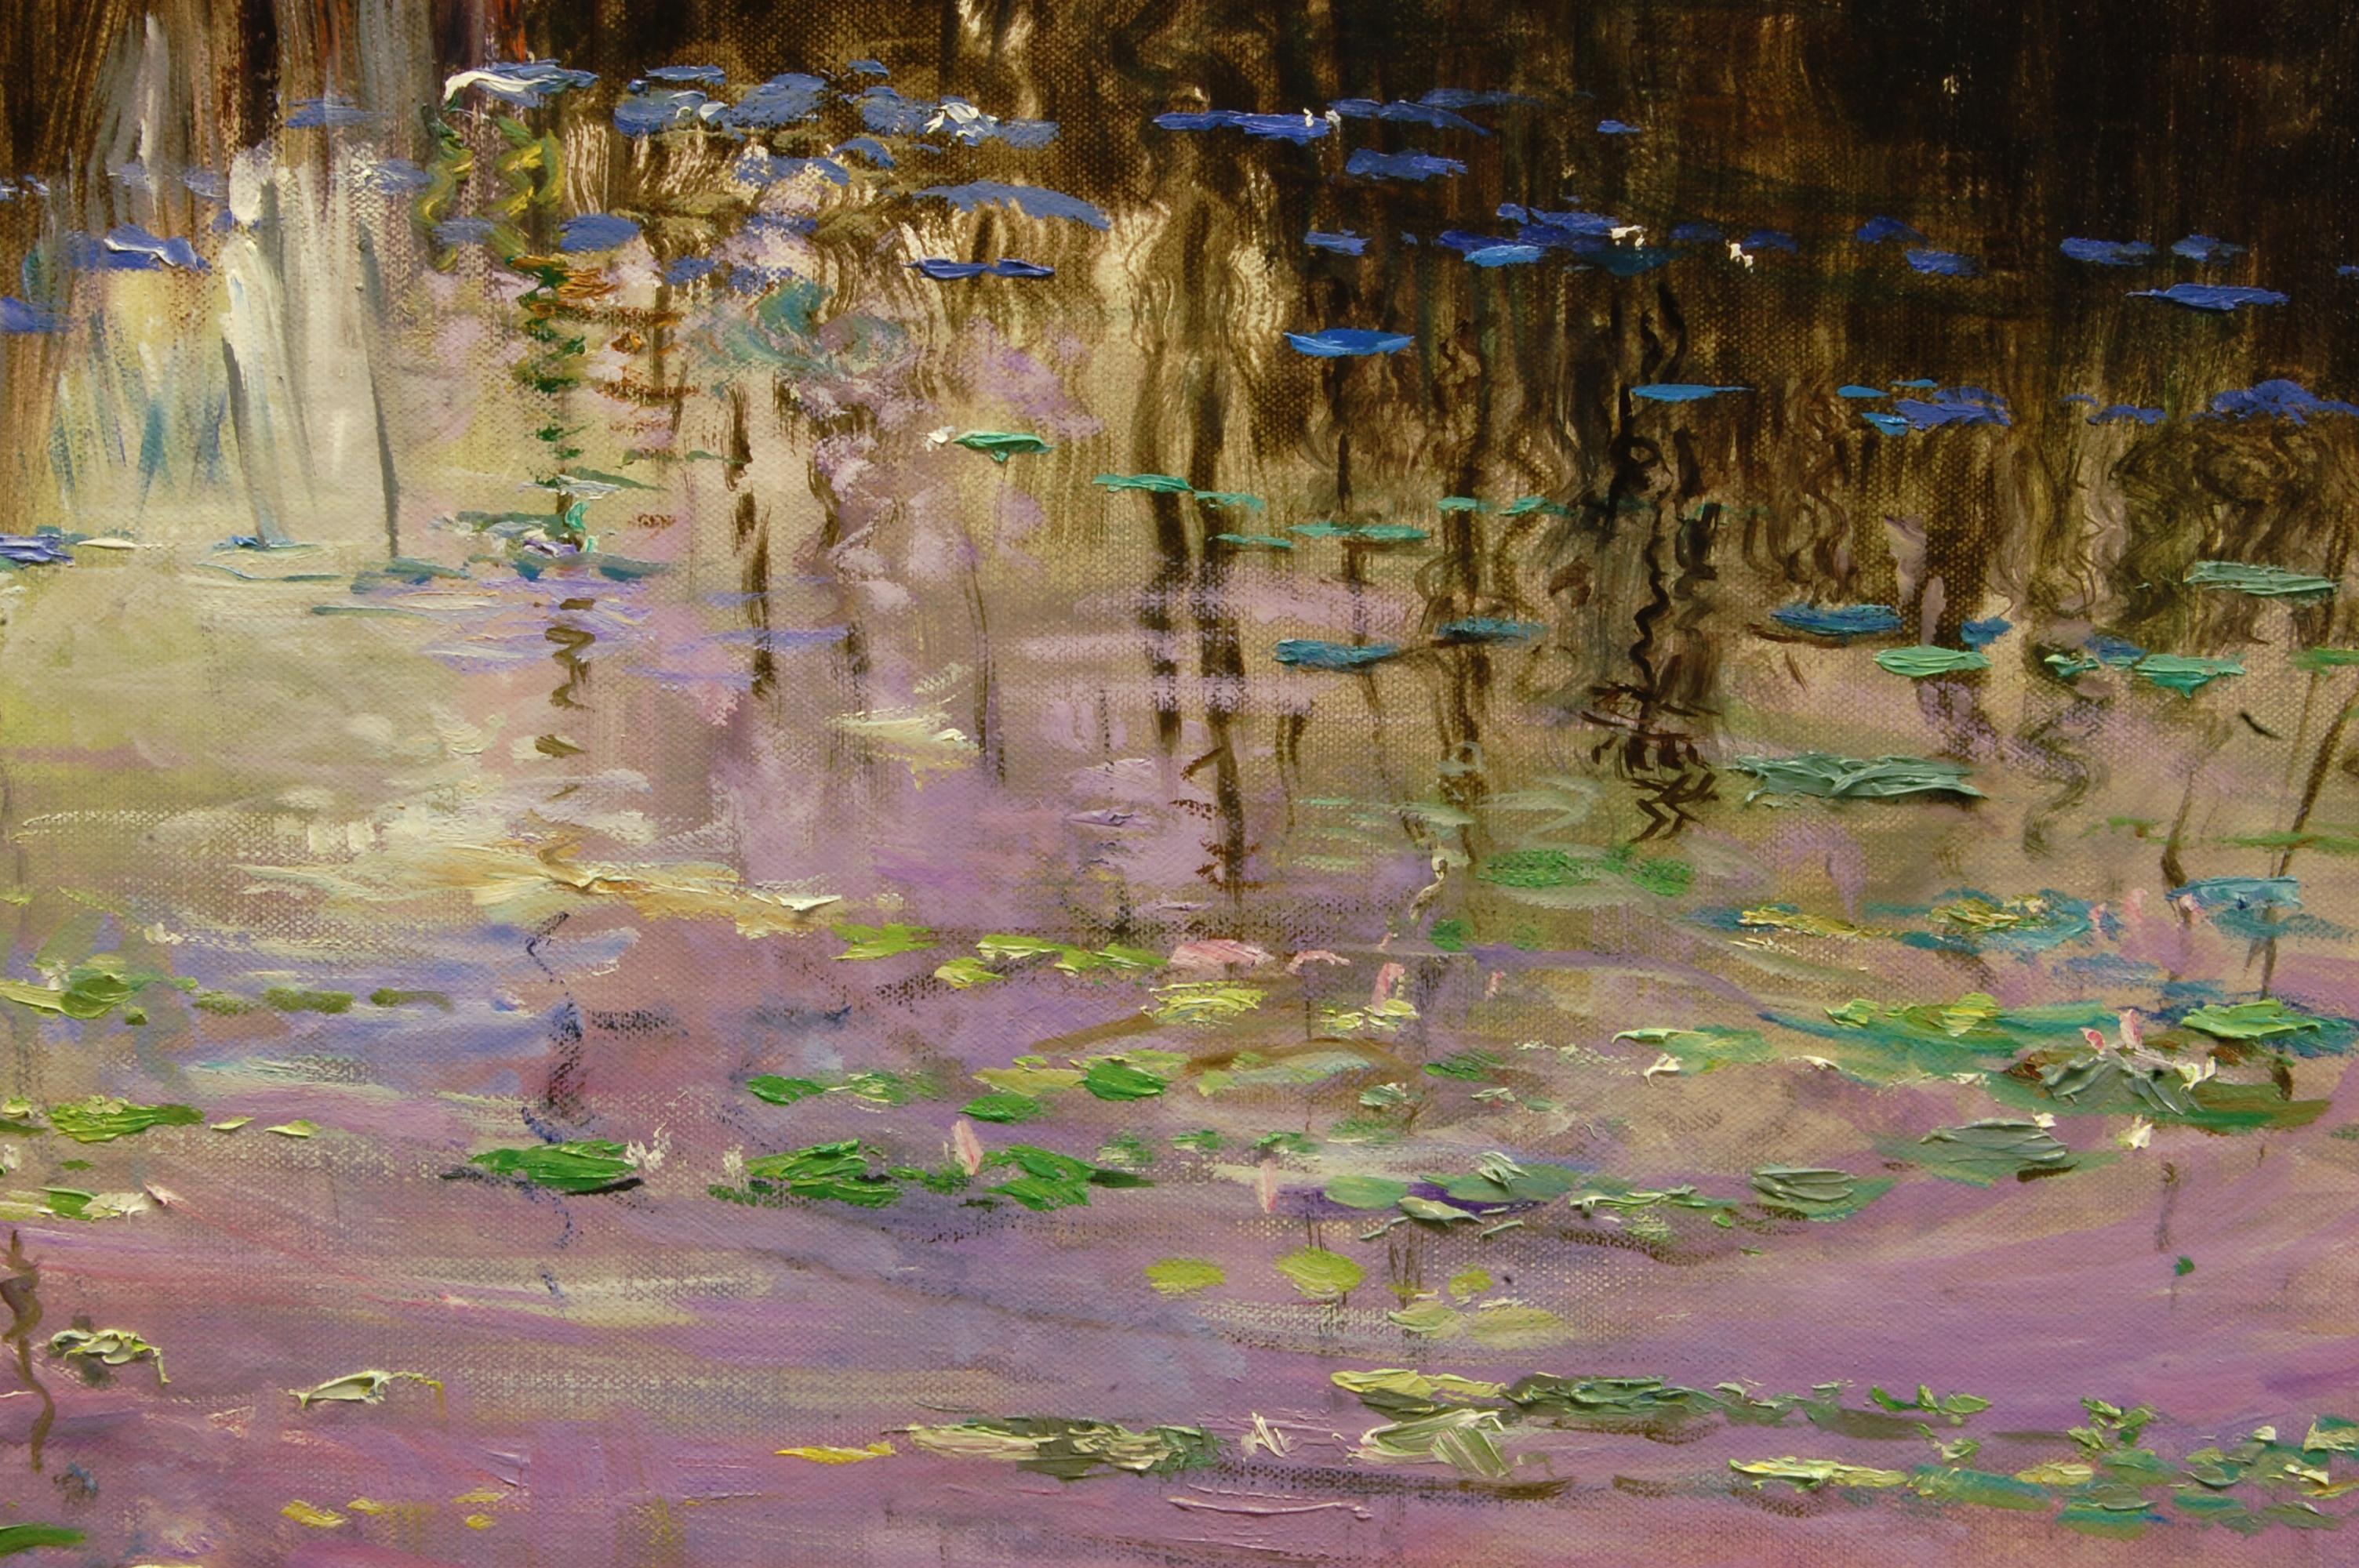 <p>Kommentare des Künstlers<br>Die Farben des frühen Abends spiegeln sich auf einem friedlichen See und tauchen seine Oberfläche in sanfte Violetttöne. Die Wasserpflanzen nehmen unterschiedliche Farbtöne an, je weiter sie sich in die schattigeren